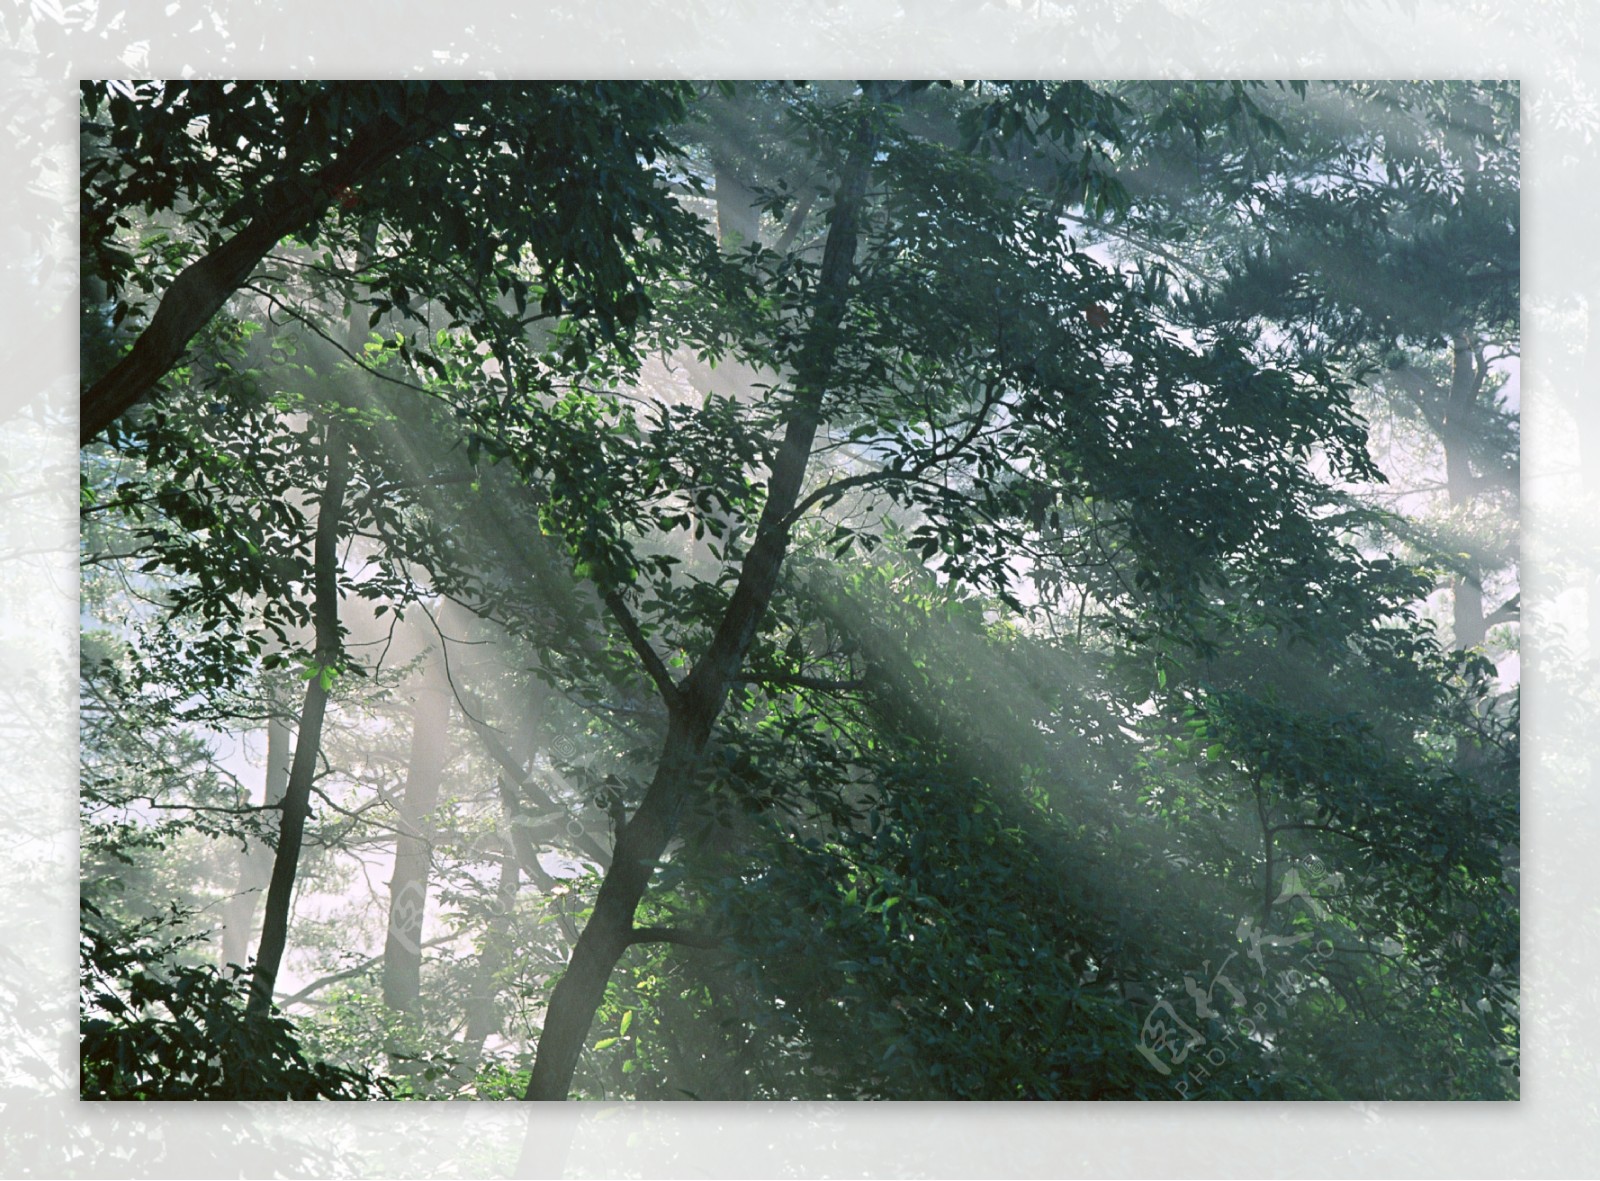 树林里的阳光图片